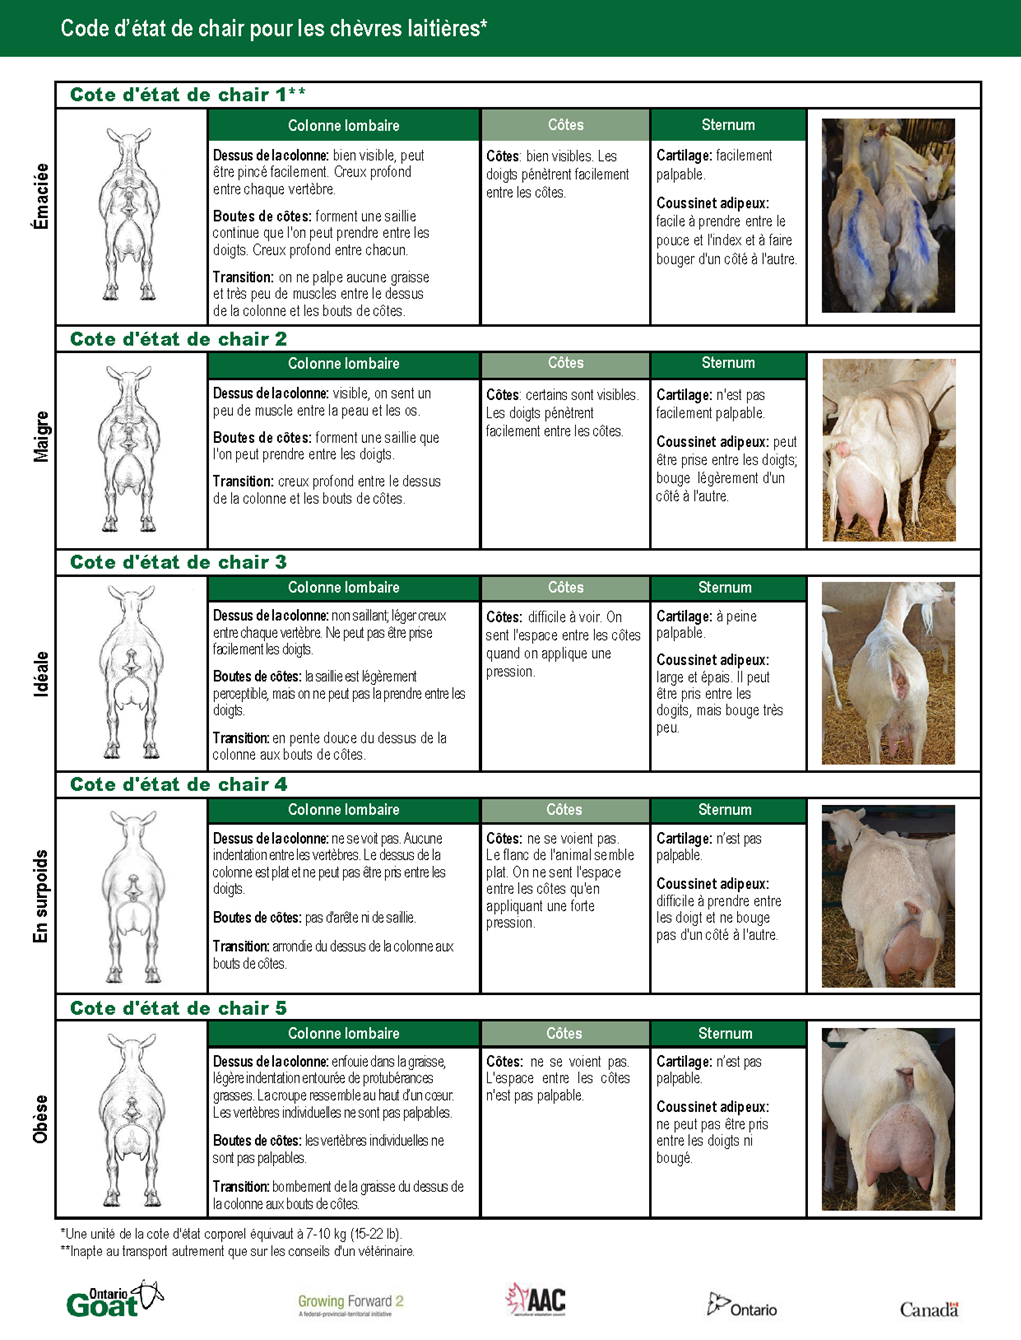 Signes de chasse et caractéristiques de l’accouplement chez les chèvres